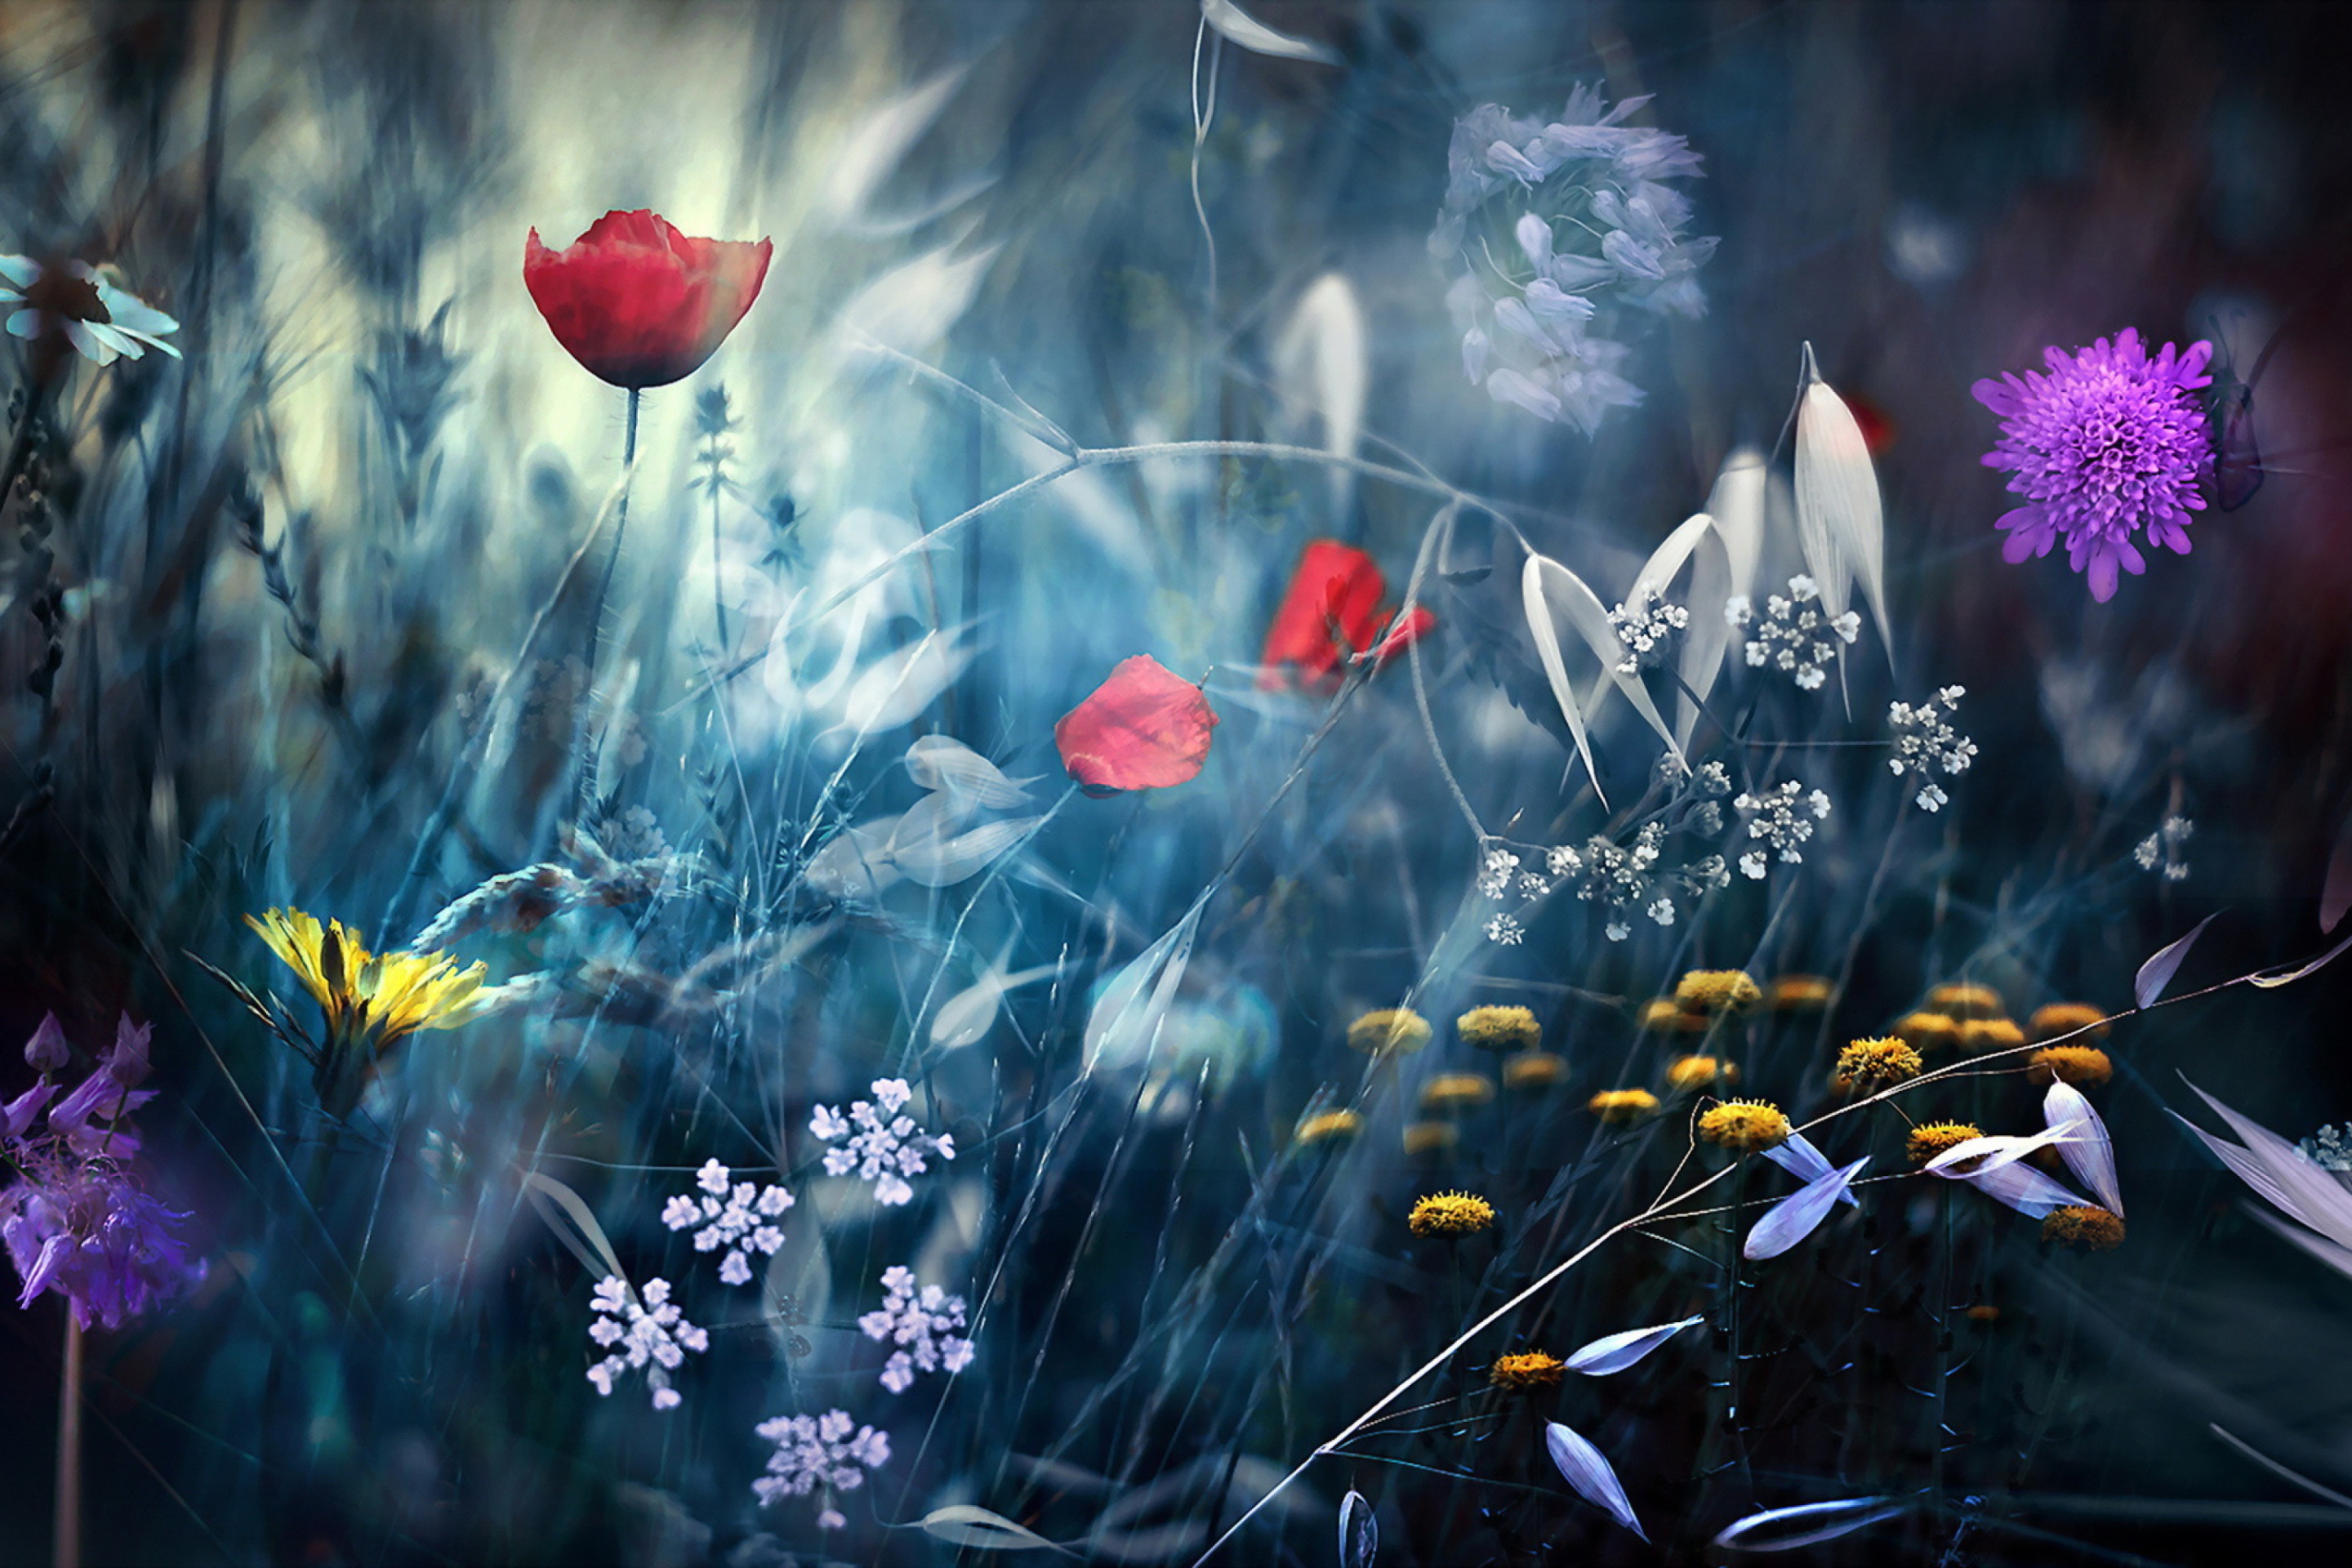 Magical Flower Field wallpaper 2880x1920